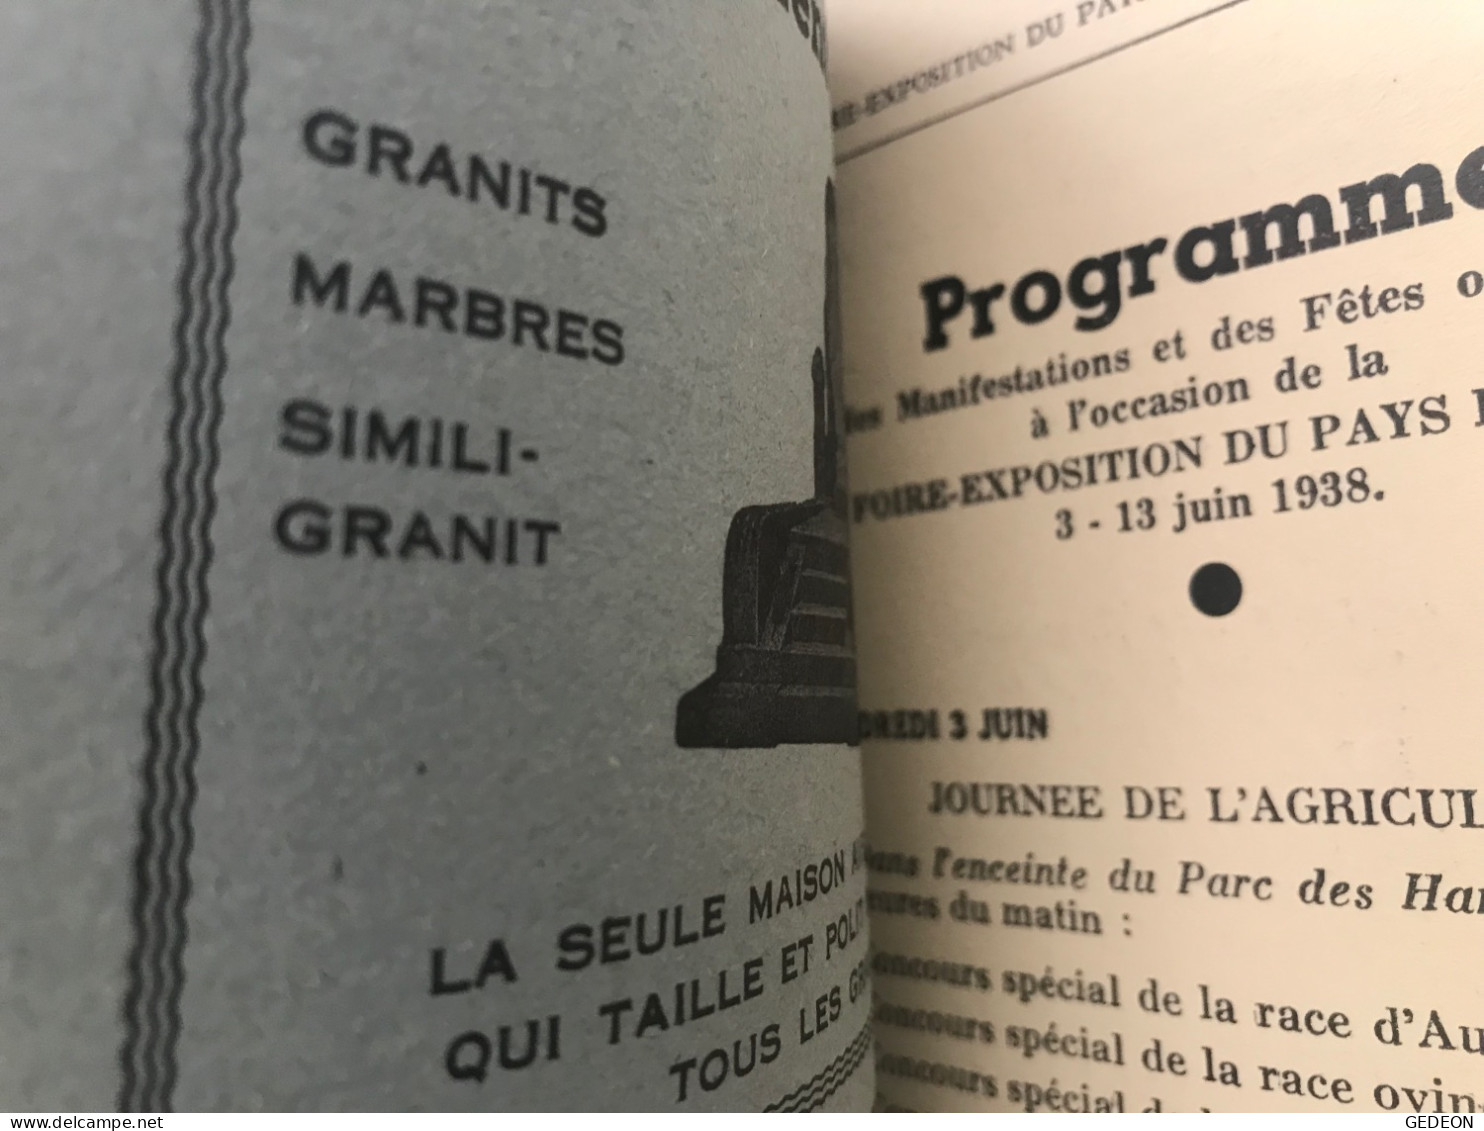 2 livres de 1938: les lampions du calvaire & petit guide officiel de la foire exposition de Rodez. 1938